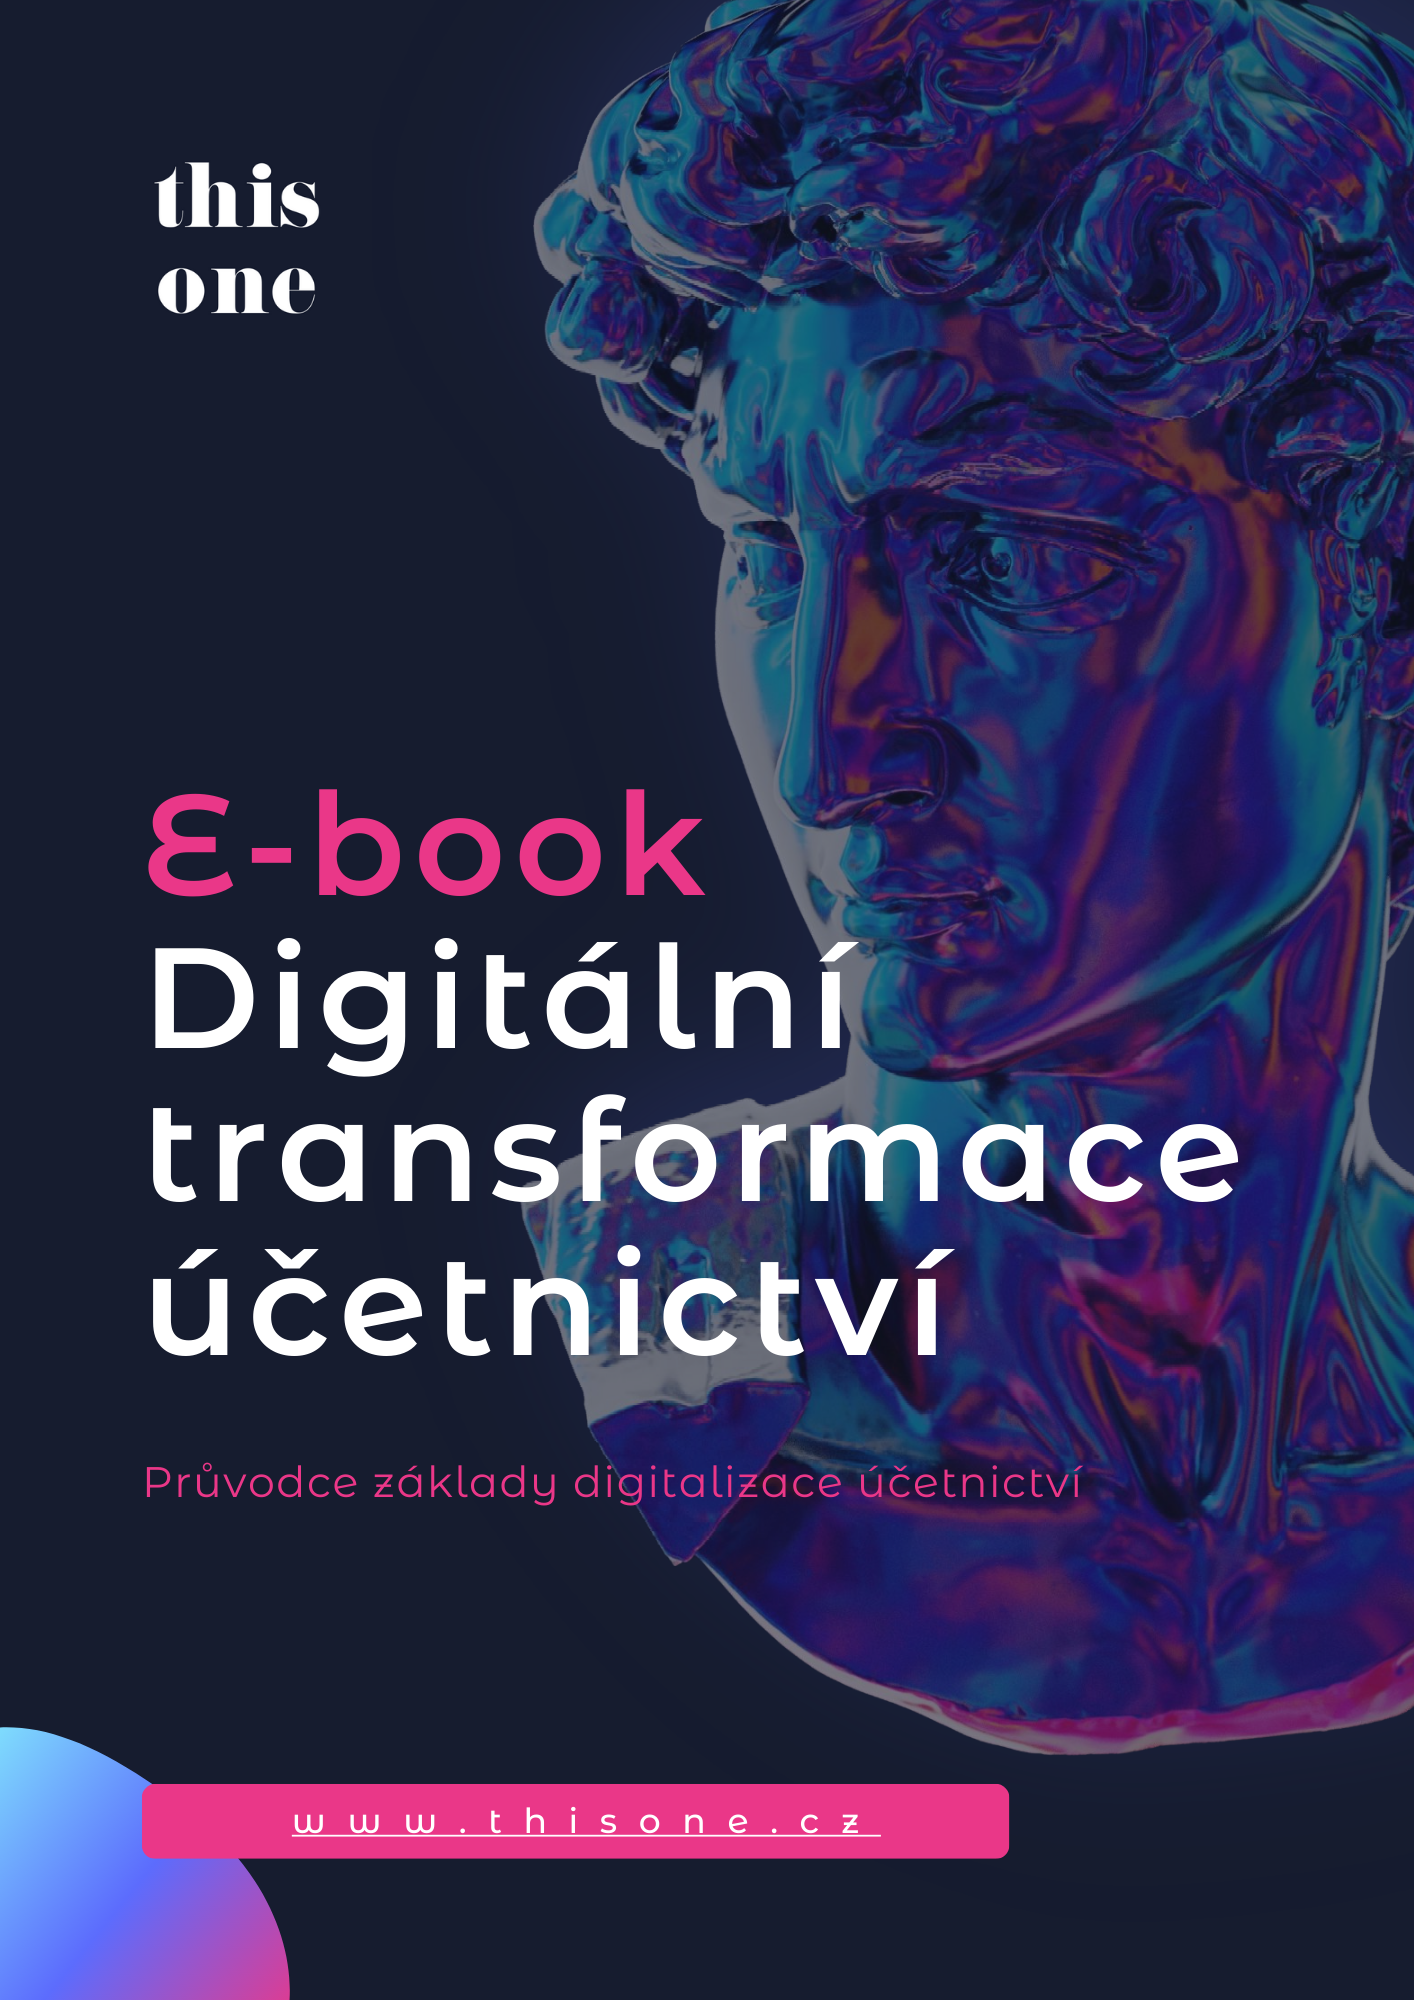 E-book digitalizace účetnictví